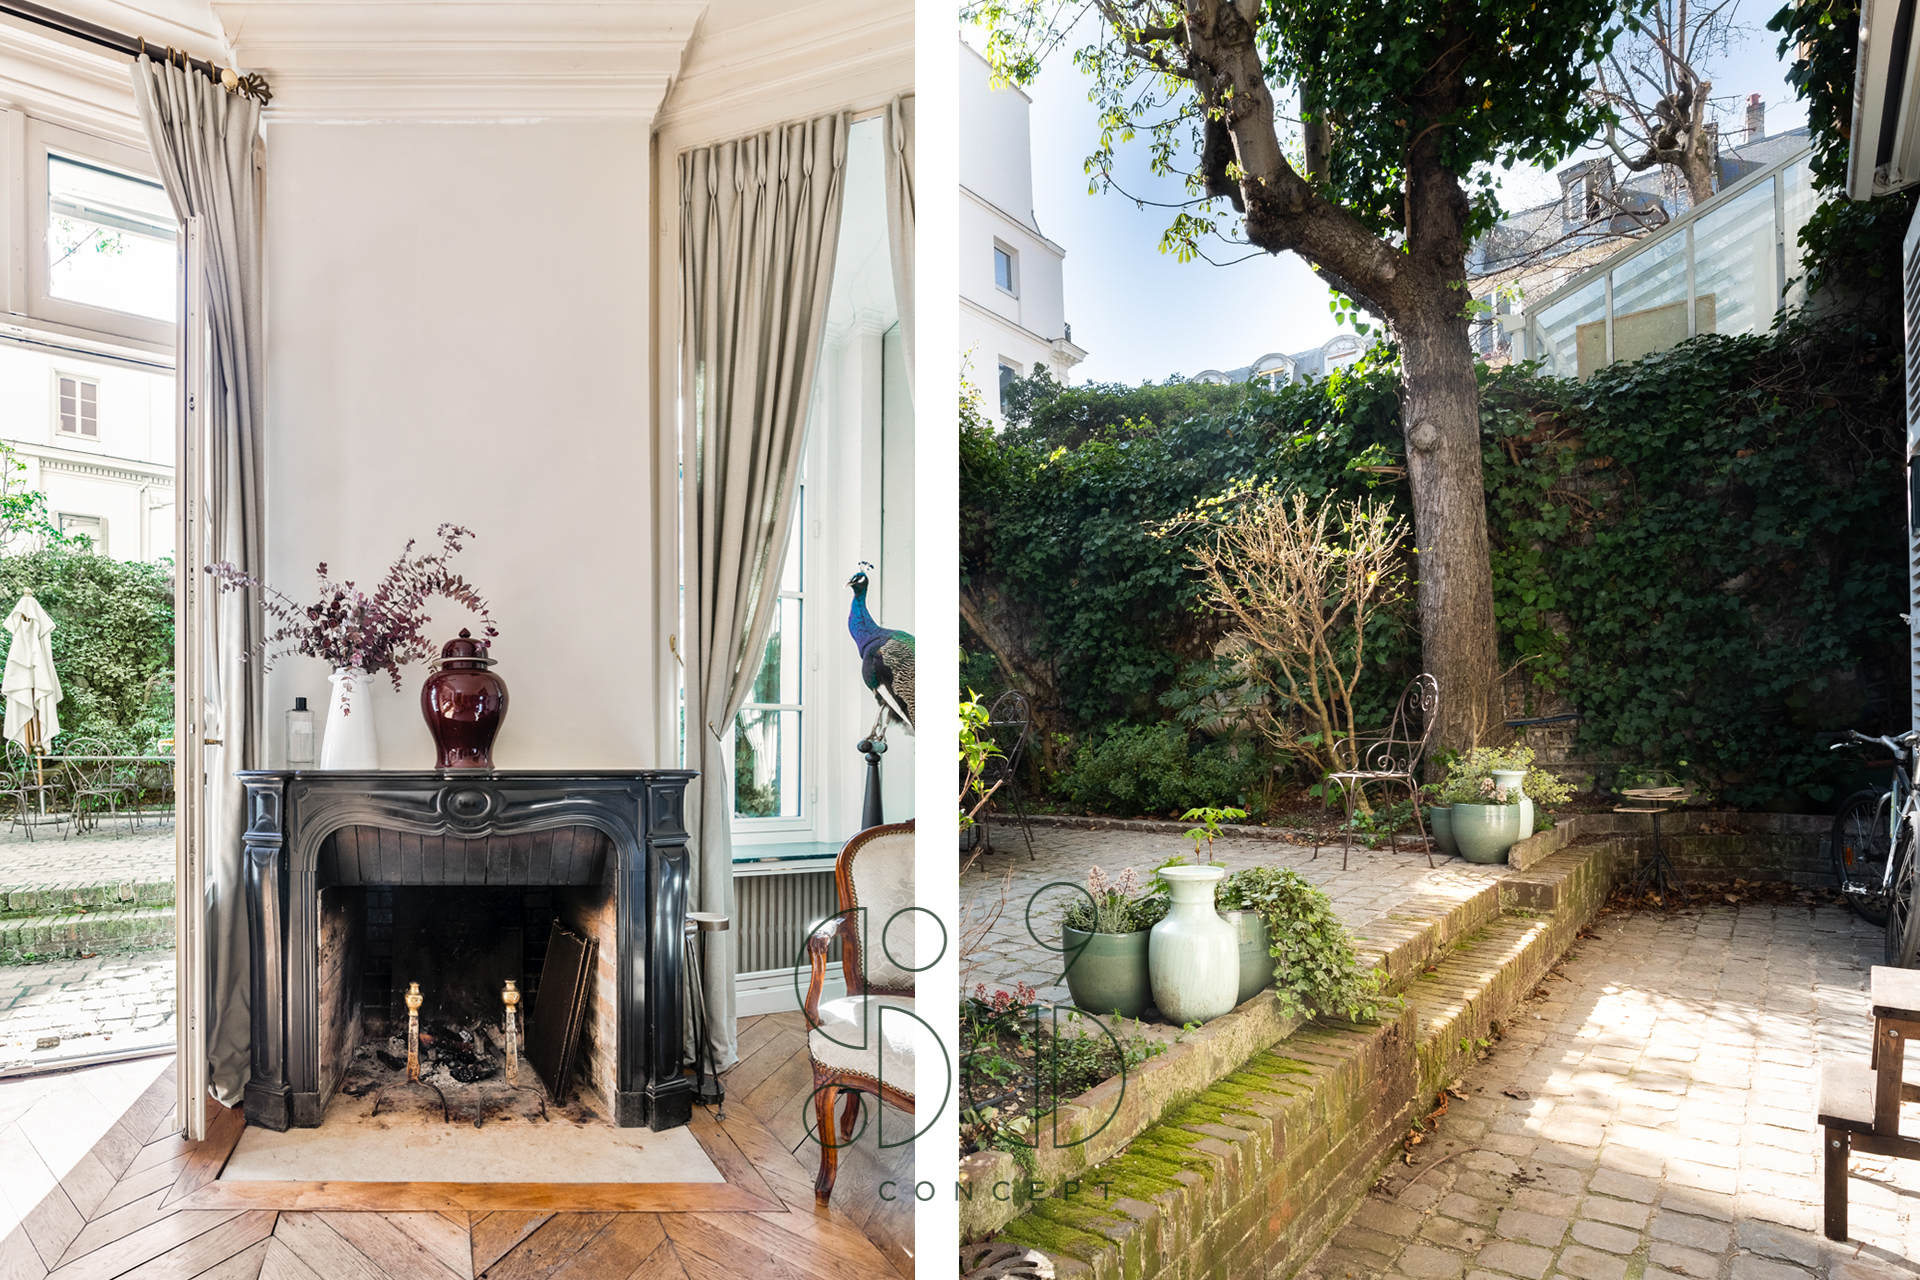 Lire la suite à propos de l’article Paris 9 – CHARLES  – Quartier Saint-Georges – Magnifique appartement comme une maison avec jardin – 195m2